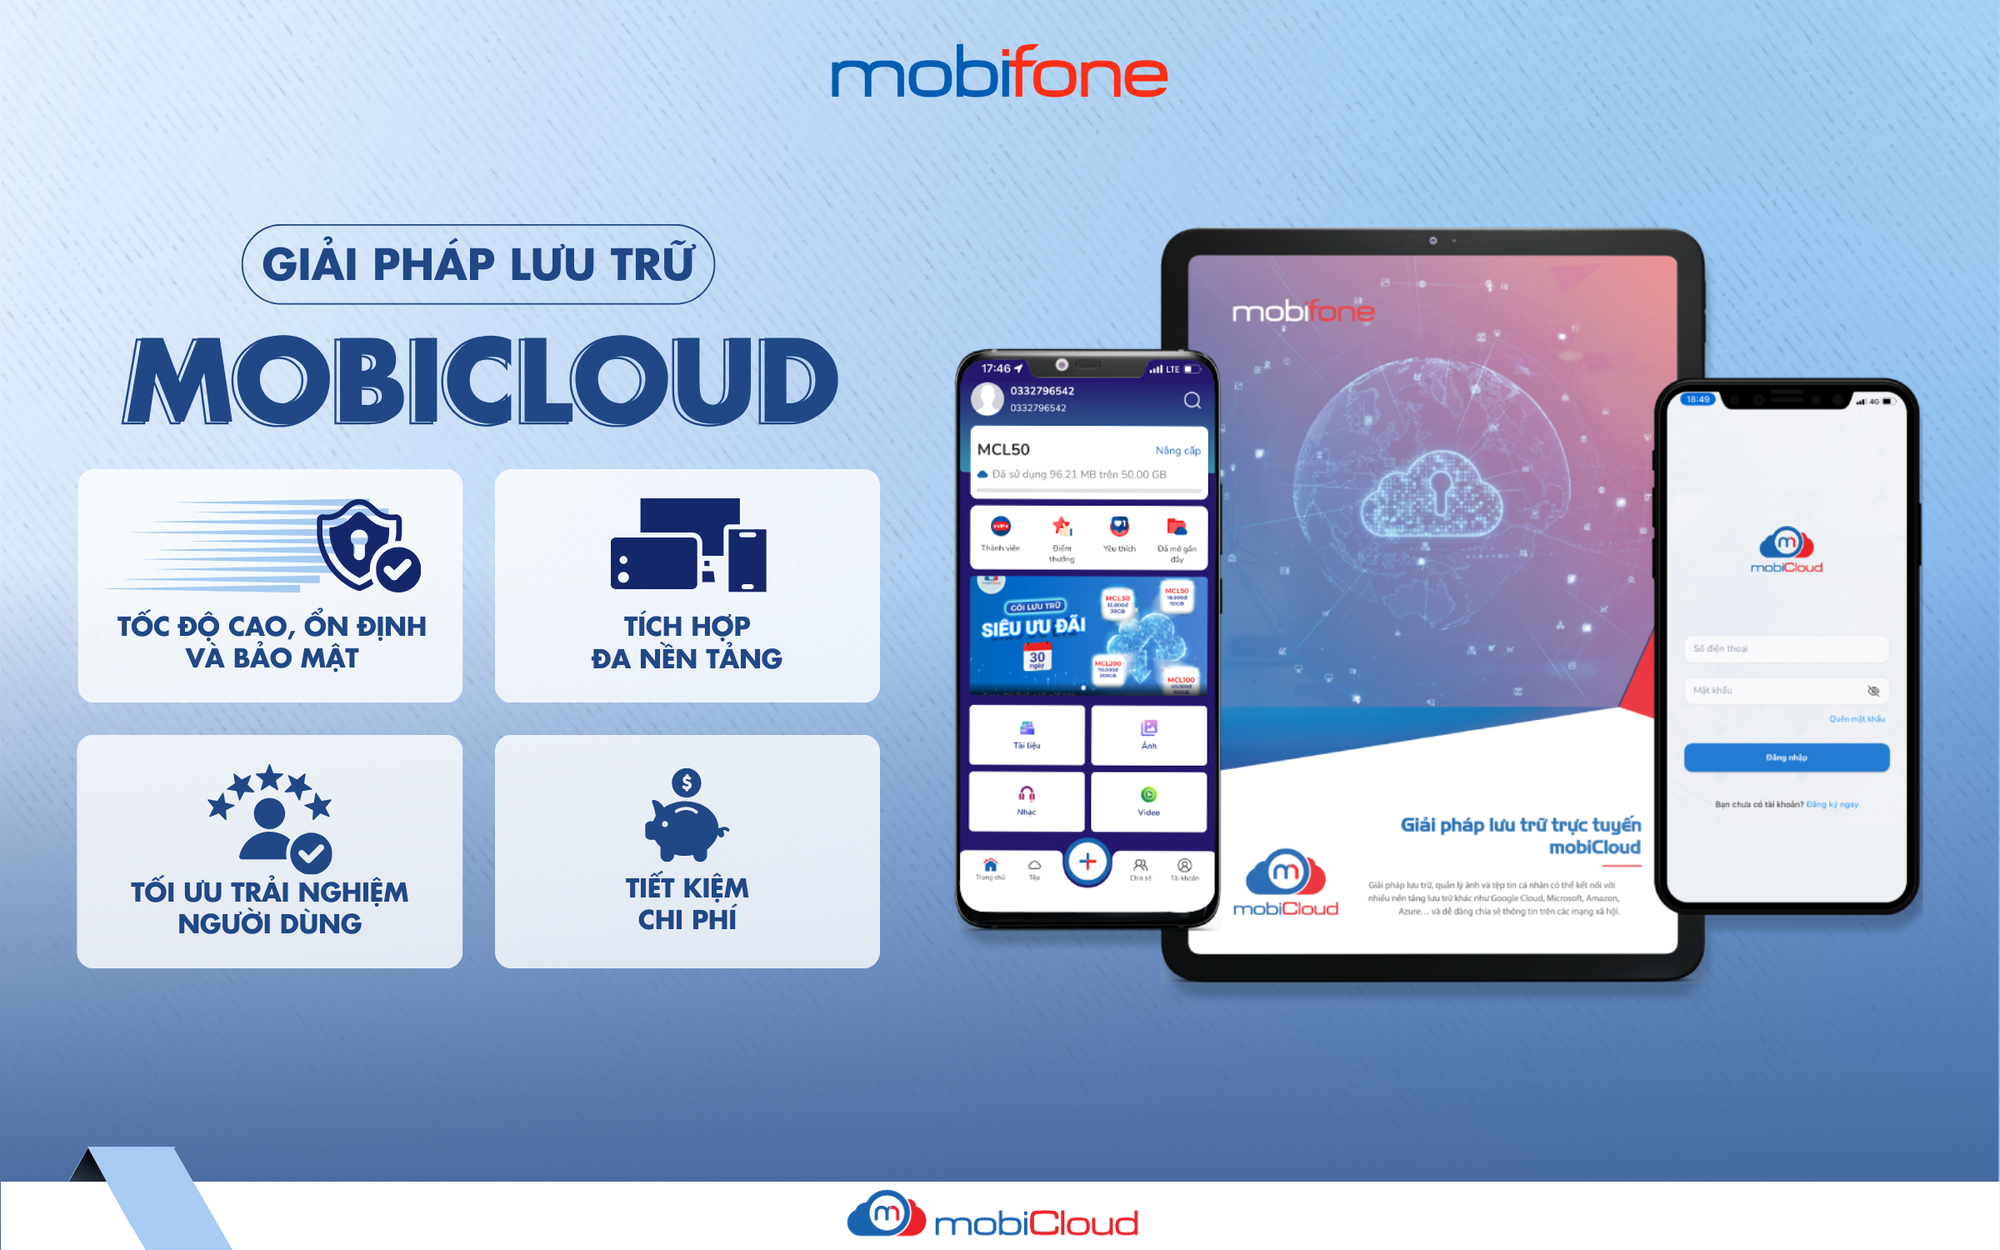 MobiCloud - "Đám mây" lưu trữ dữ liệu được yêu thích hàng đầu Việt Nam- Ảnh 1.